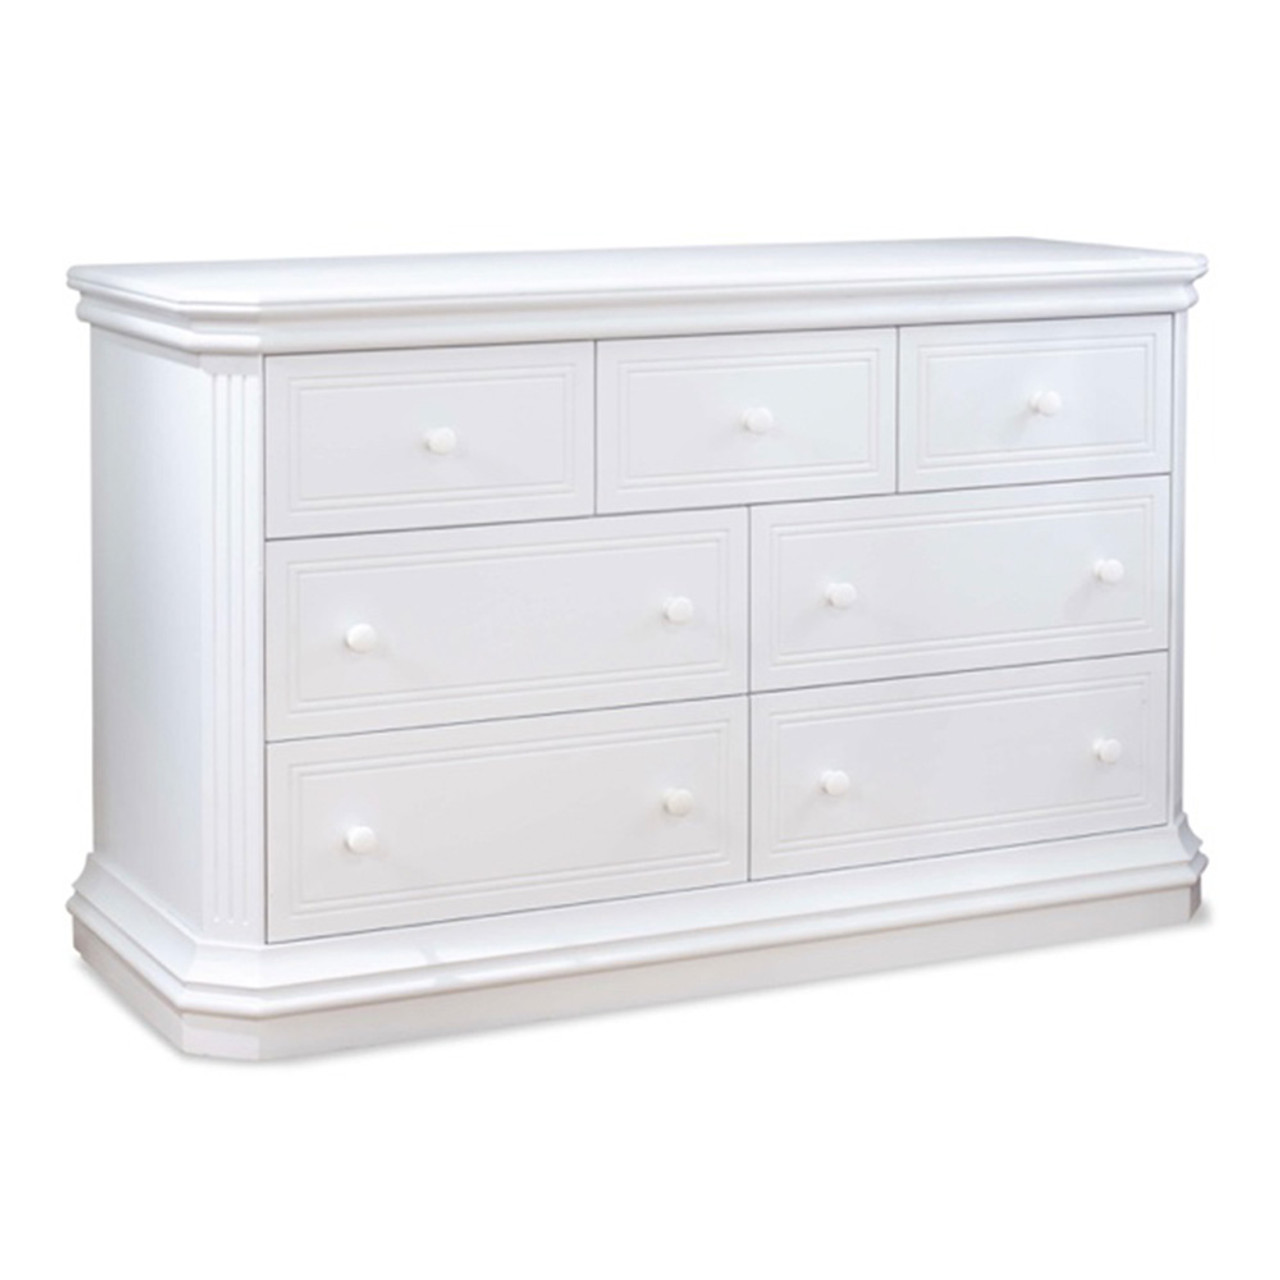 White Double Dresser by Sorelle Vista Elite Supreme| Purchase ...